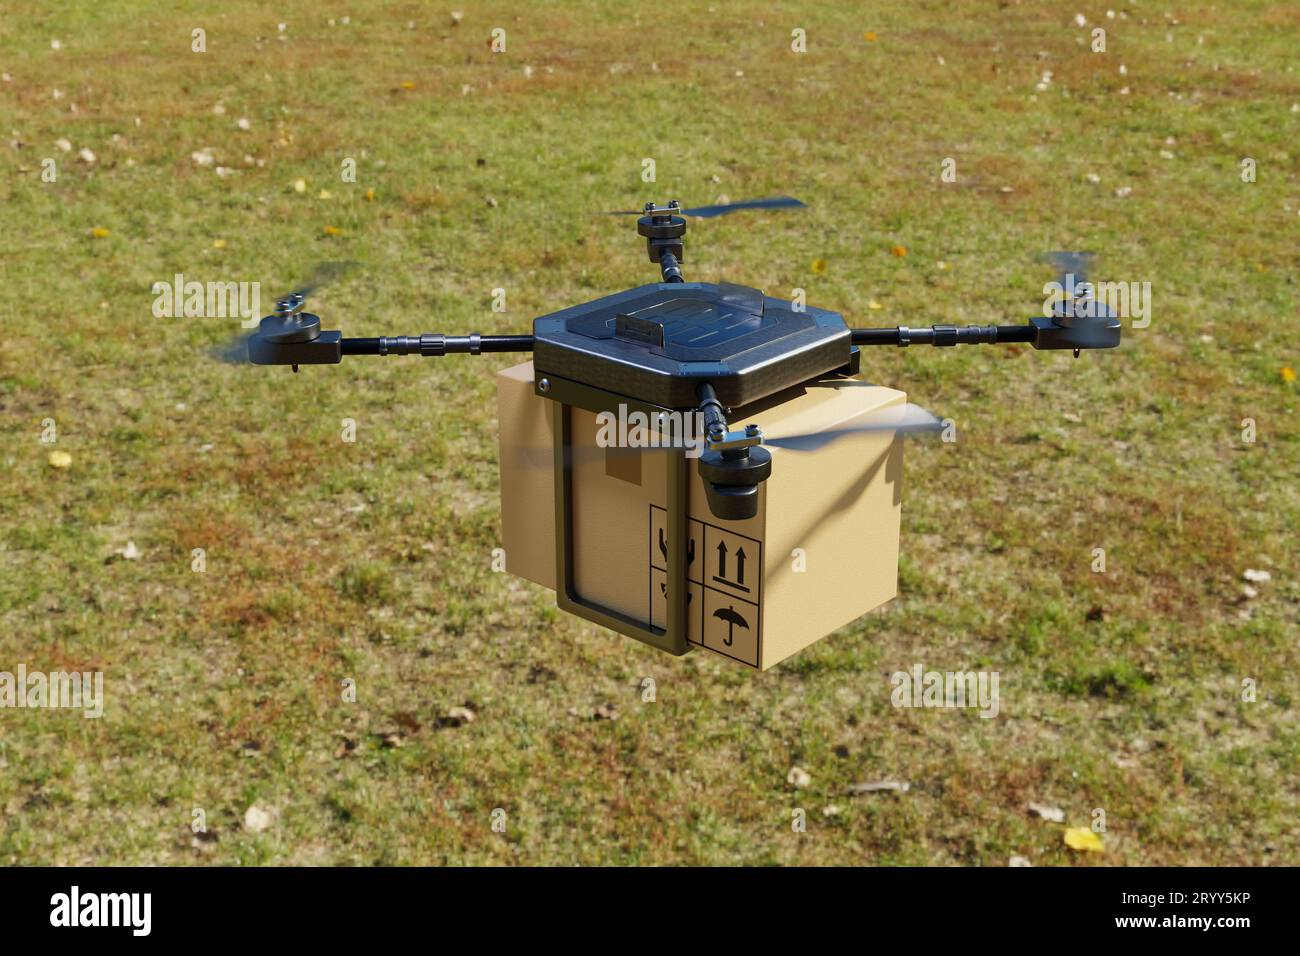 Drone aérien volant de livraison dans la maison de ferme. Concept de transport et d'agriculture de technologie d'affaires. Achats et services en ligne Banque D'Images